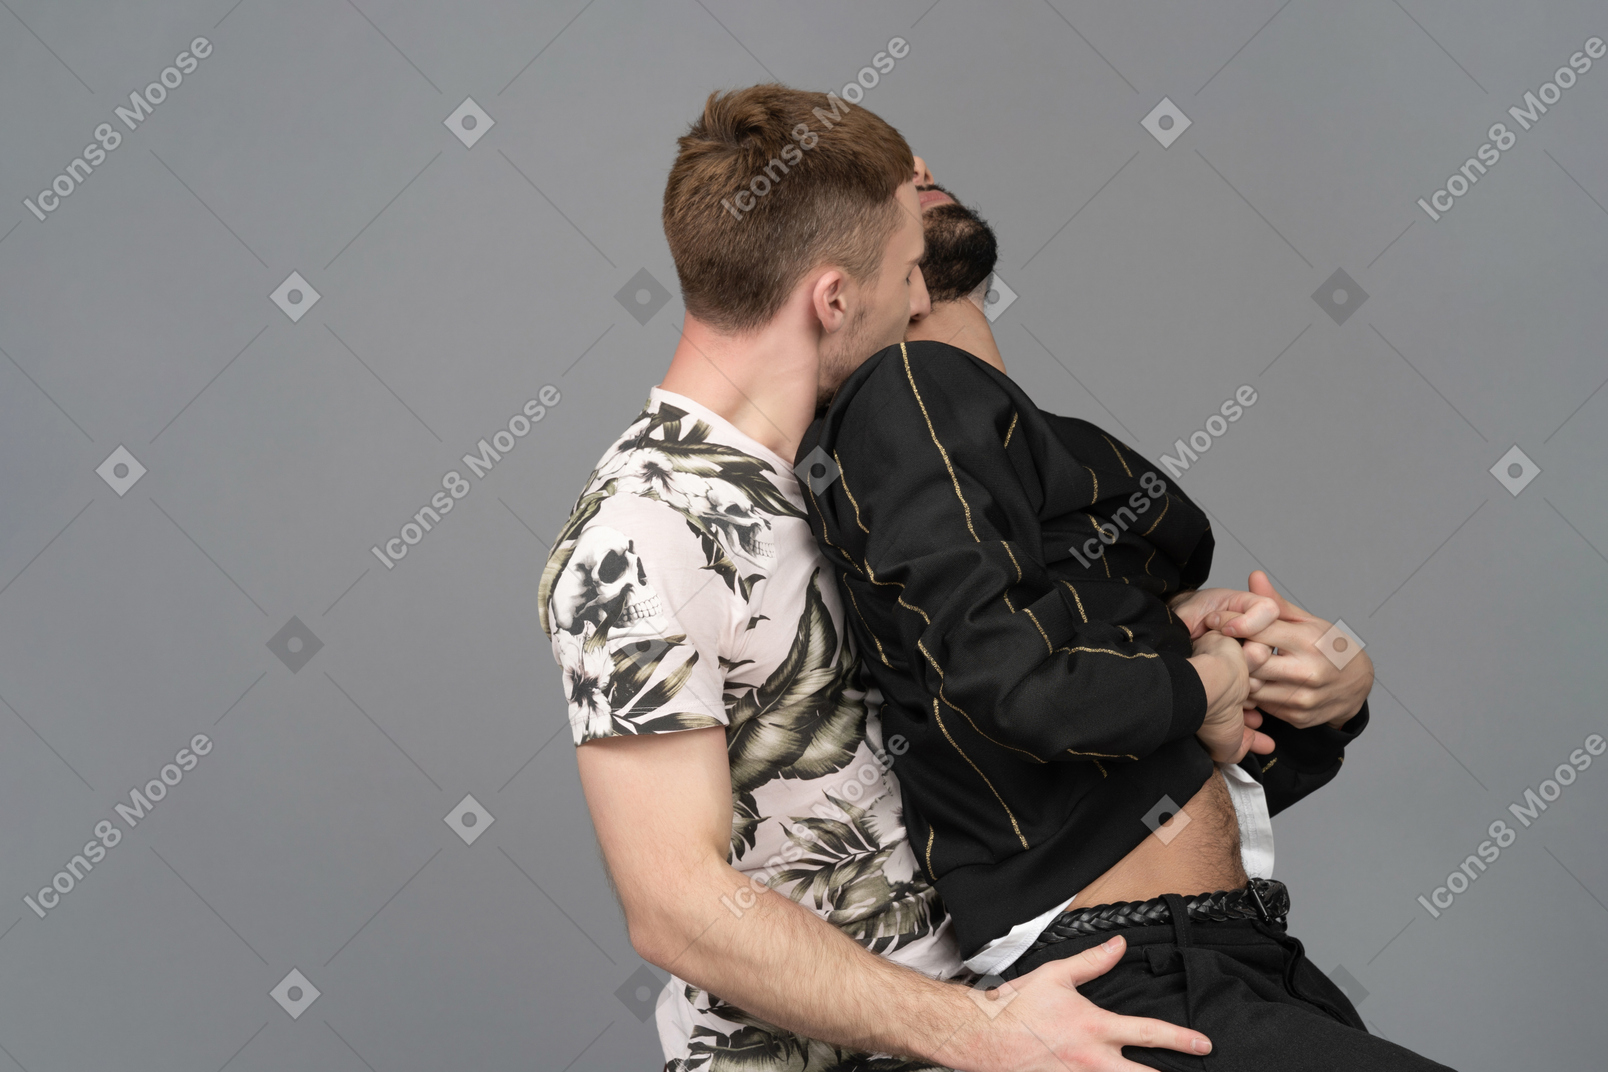 Junger kaukasier, der seinen partner sexuell von hinten umarmt und seinen hals küsst